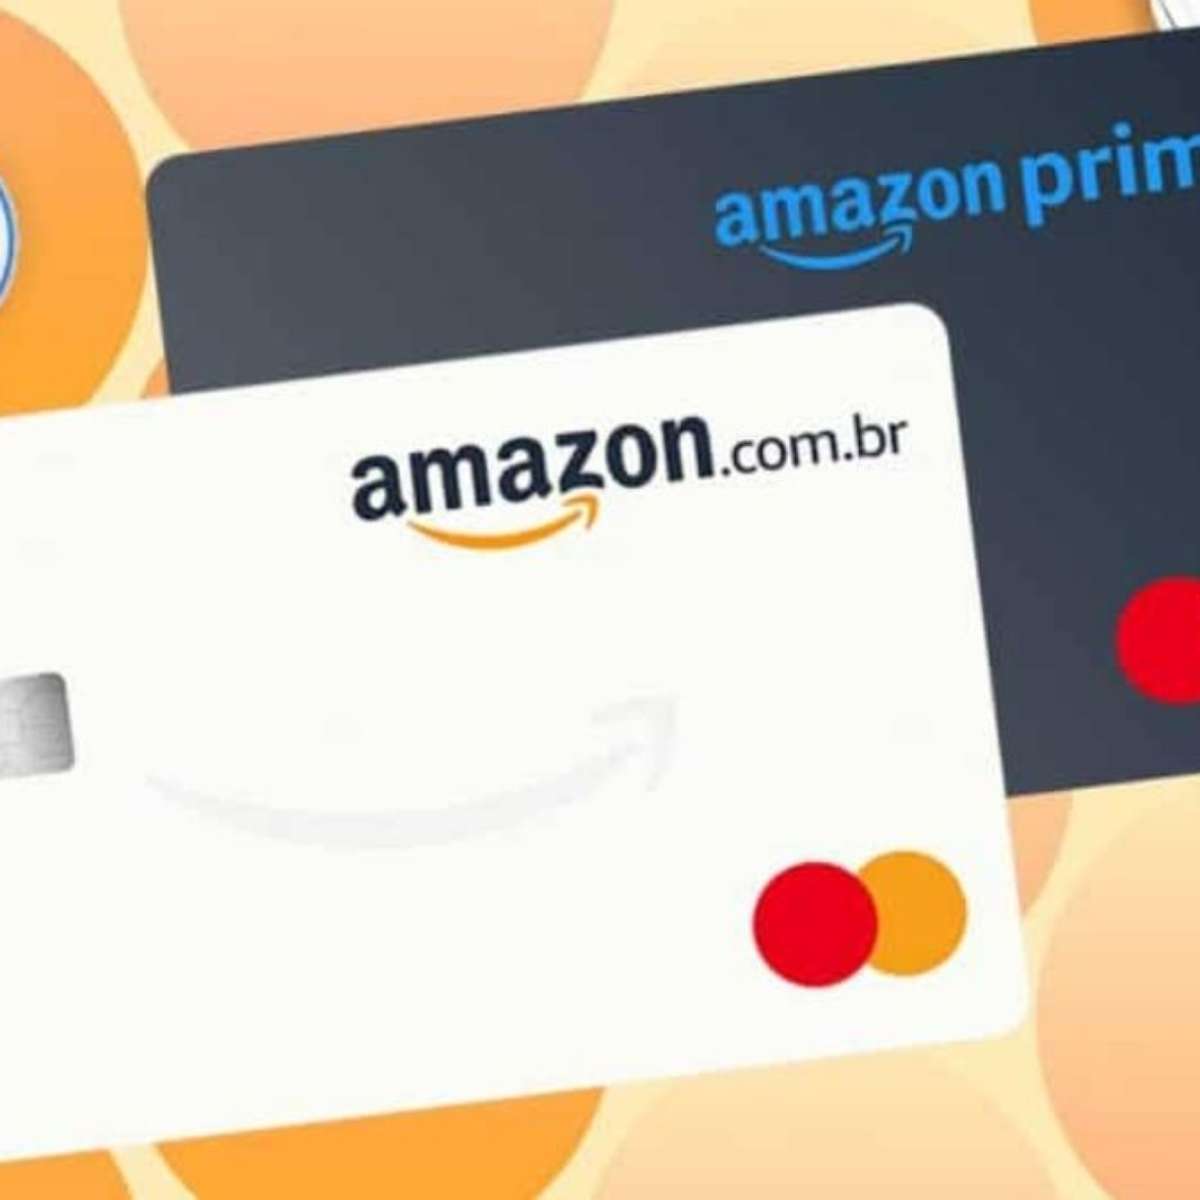 lança primeiro cartão de crédito no Brasil em parceria com Bradesco  e Mastercard - E-Commerce Brasil